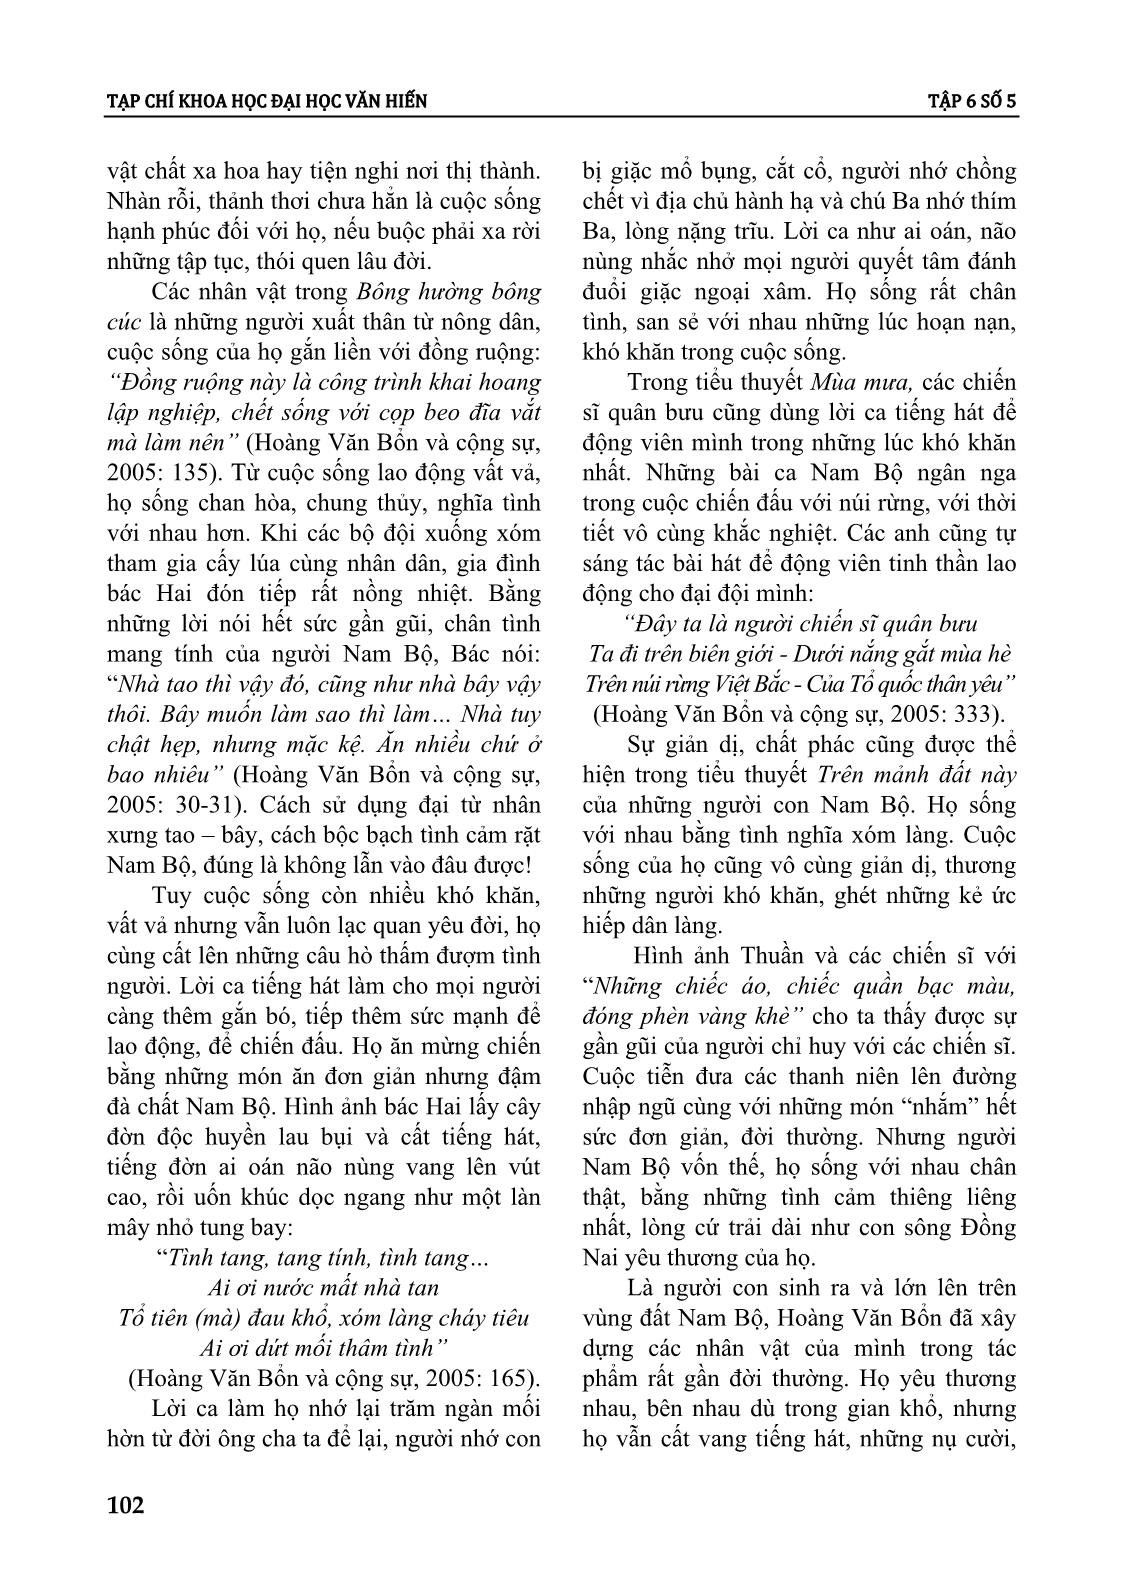 Tính cách con người nam bộ trong tiểu thuyết Hoàng Văn Bổn giai đoạn 1955 - 1975 trang 6